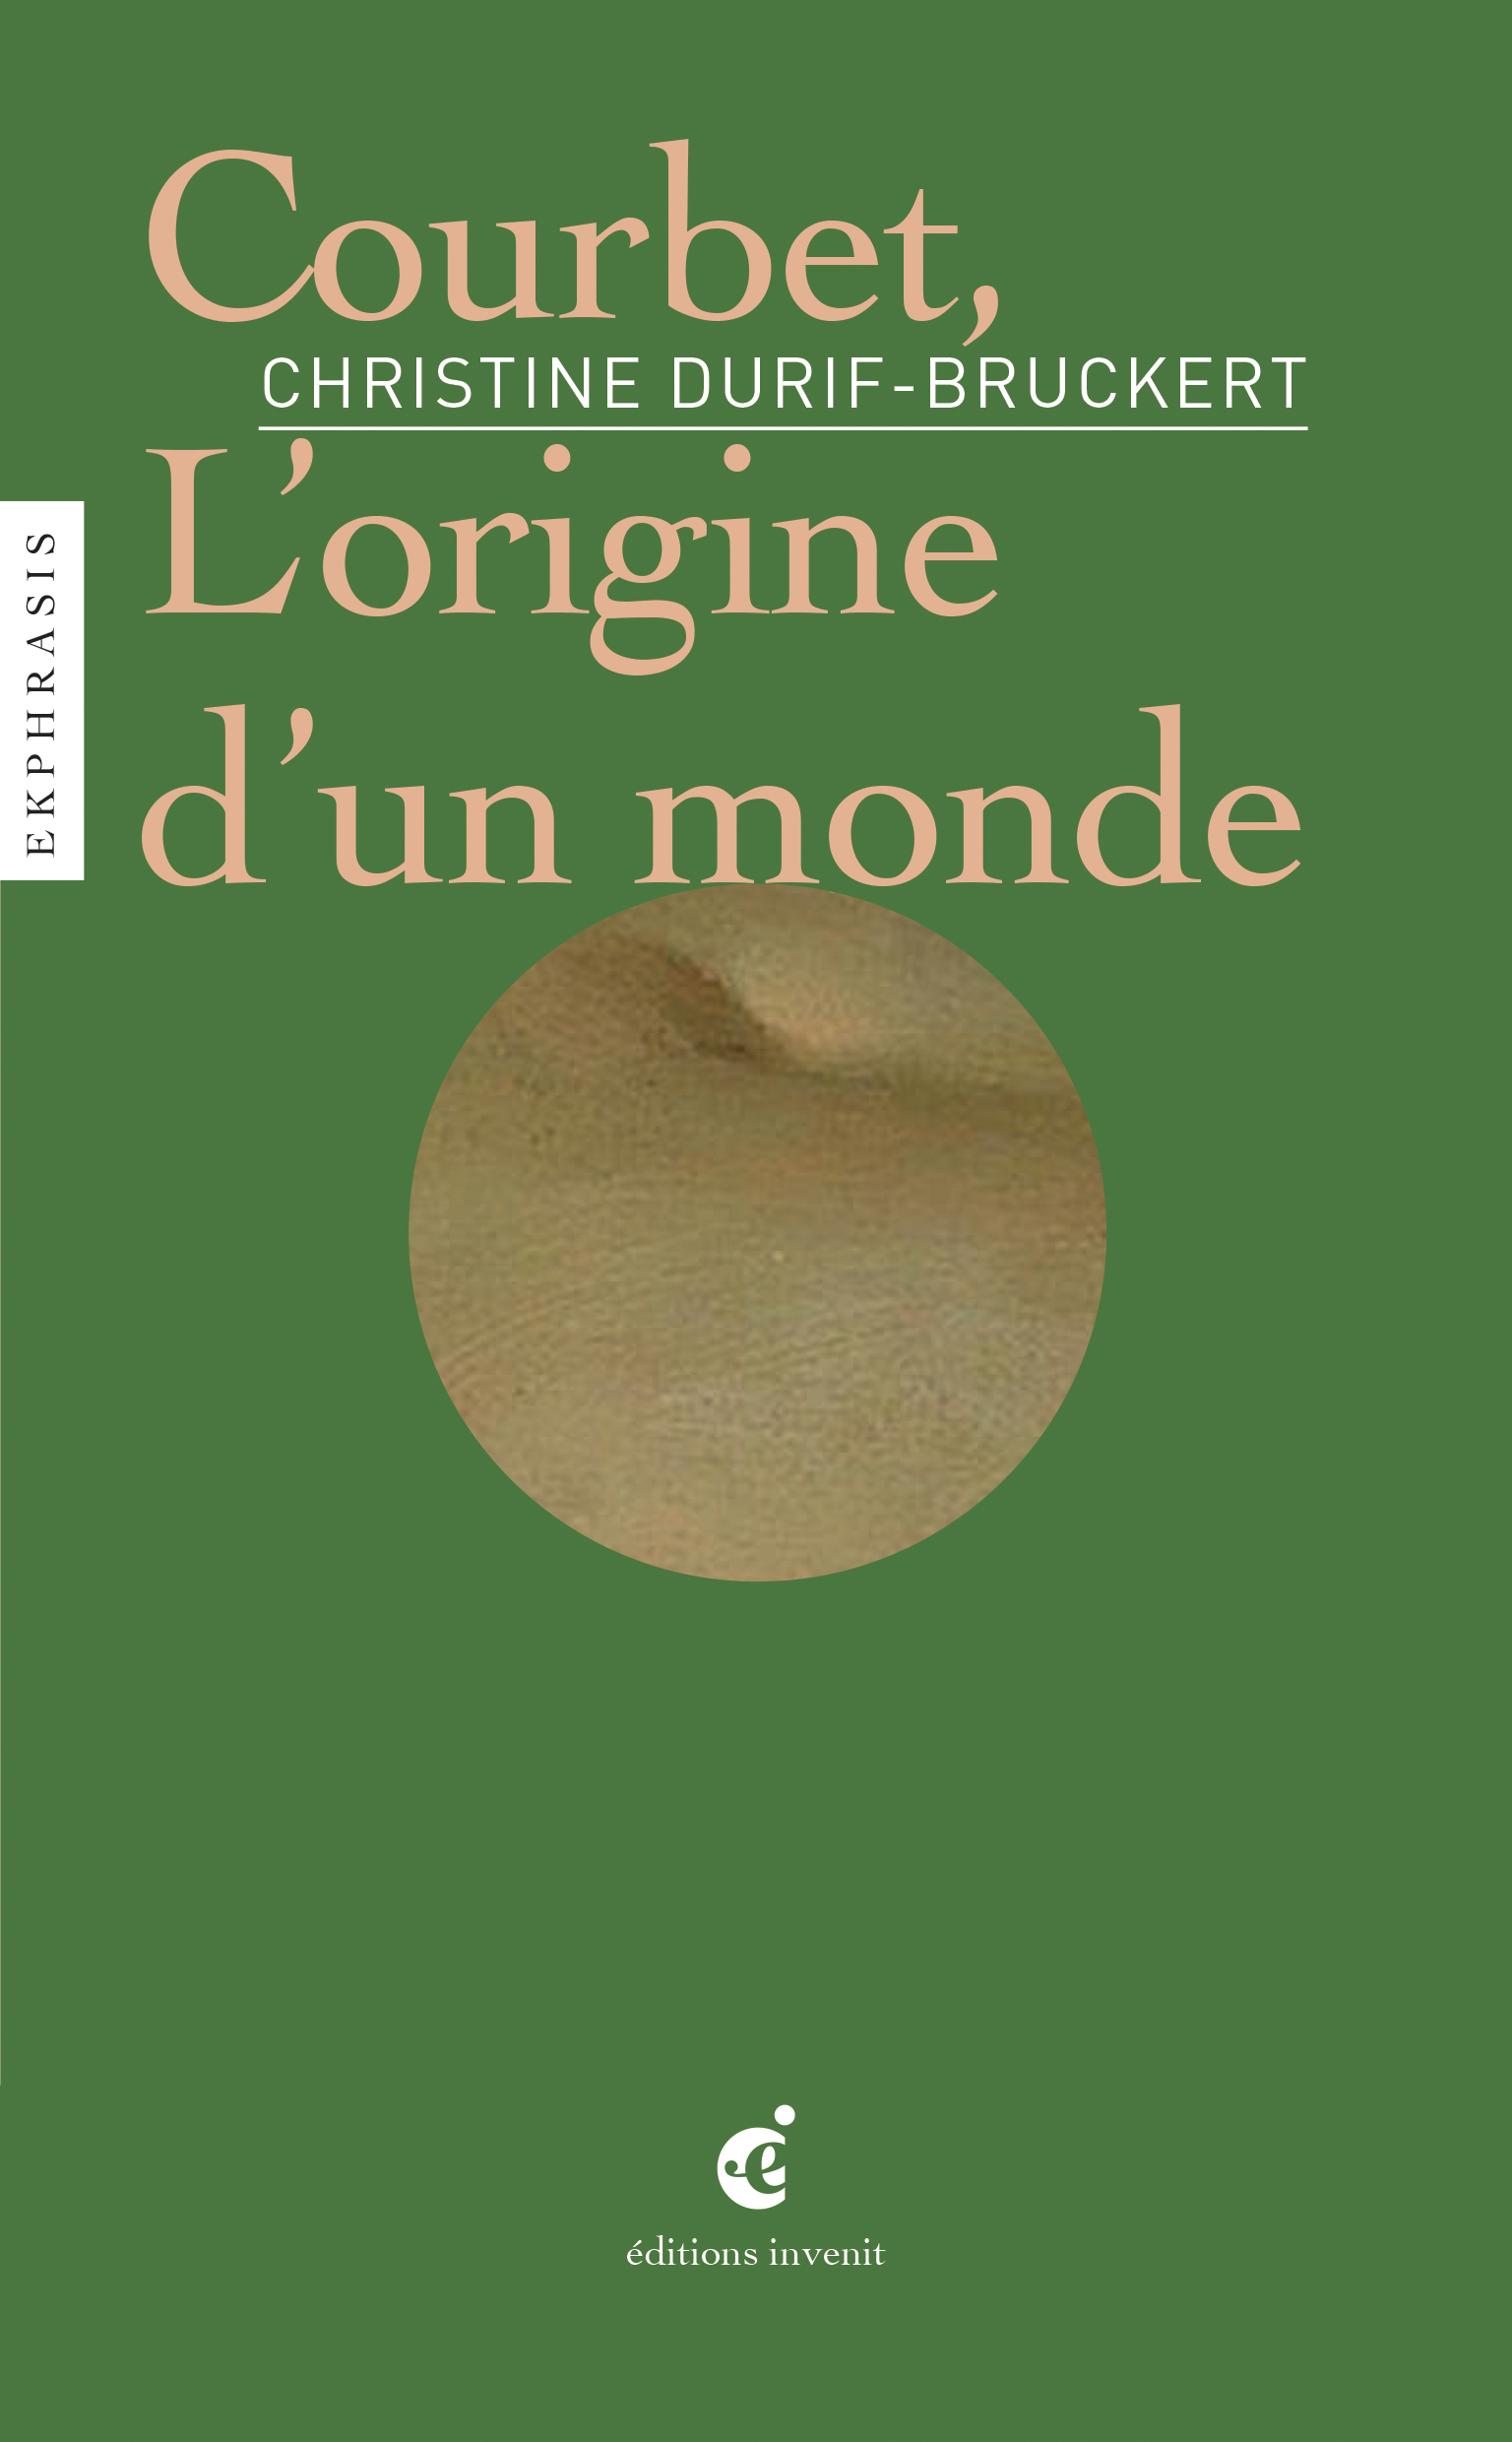 Couverture de l'ouvrage de Christine Durif-Brucker "Courbet, l'origine d'un monde" (paru en 2021 chez INVENIT)